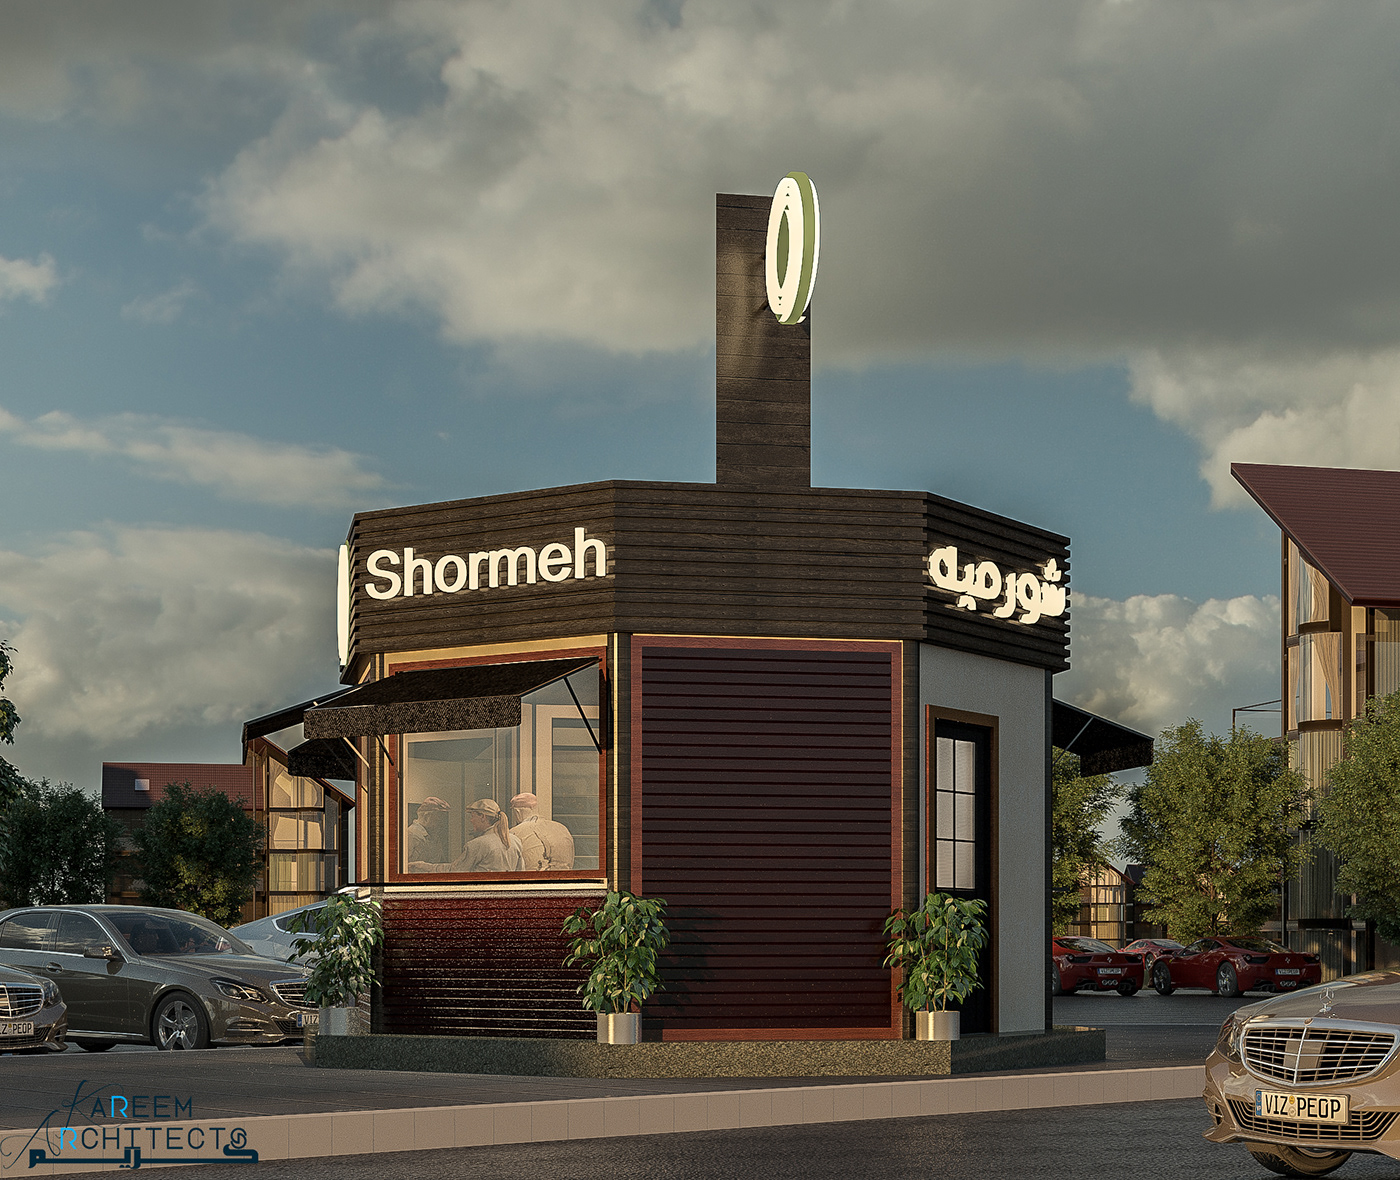 Shormeh shop and café